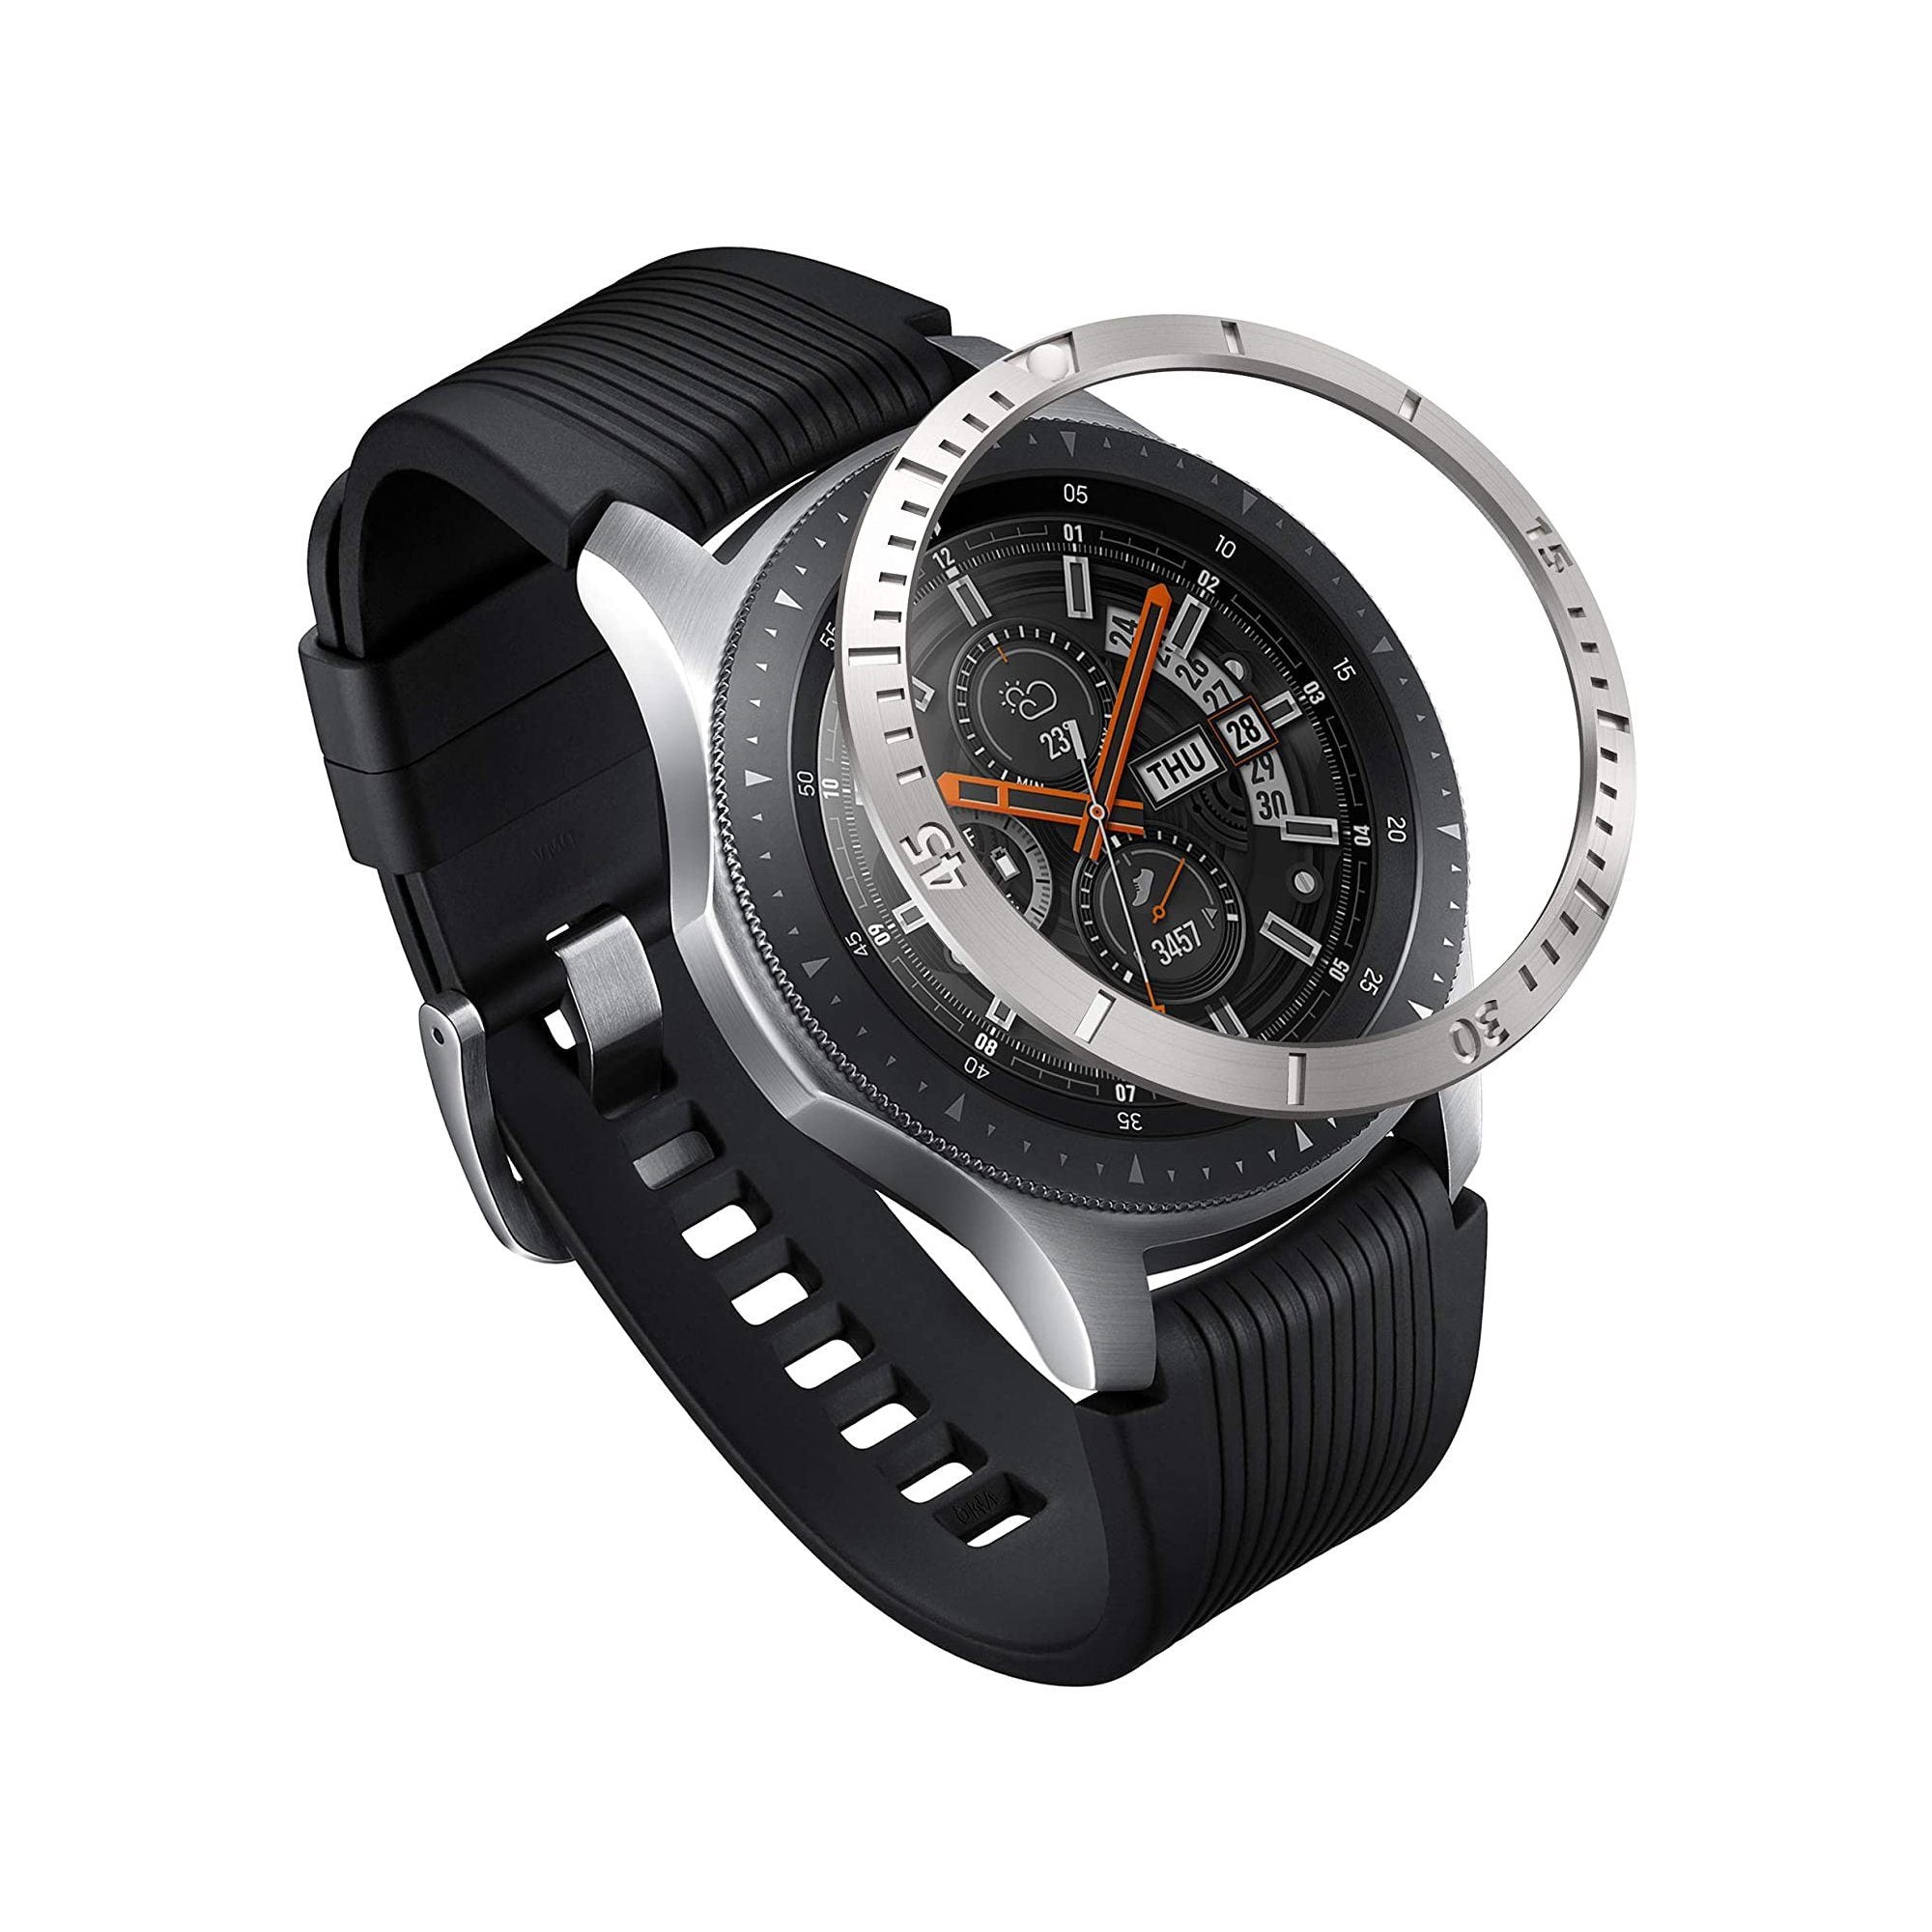 Ringke BEZEL STYLING for Galaxy Watch 46mm/Gear S3, Stainless Steel/Aluminum